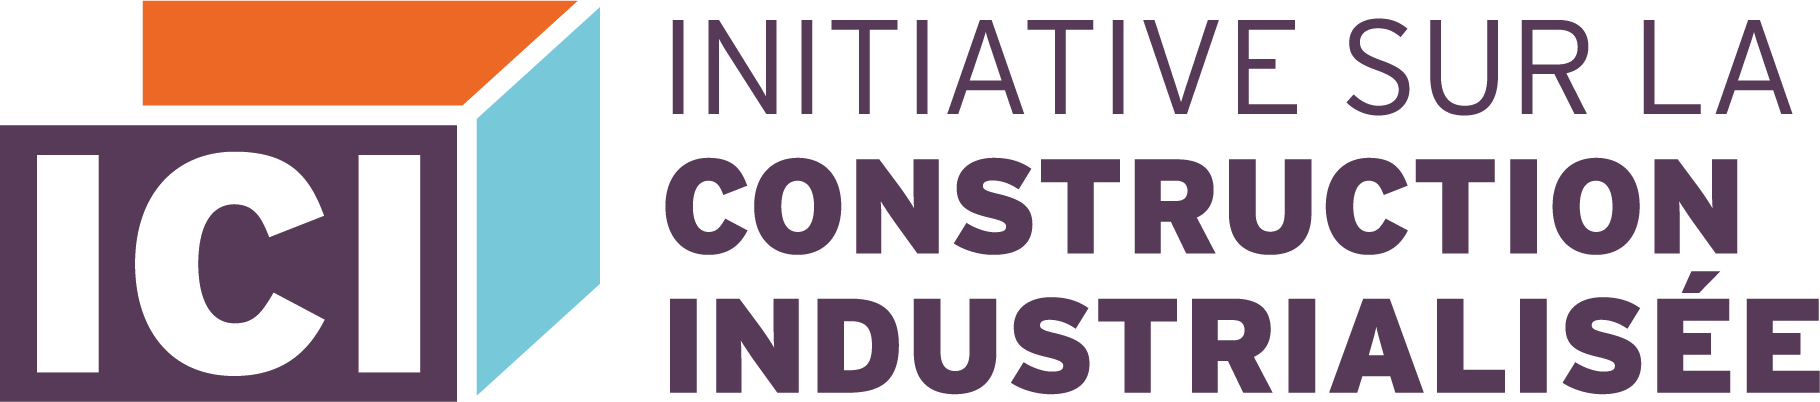 Logo Initiative sur la construction industrialisée